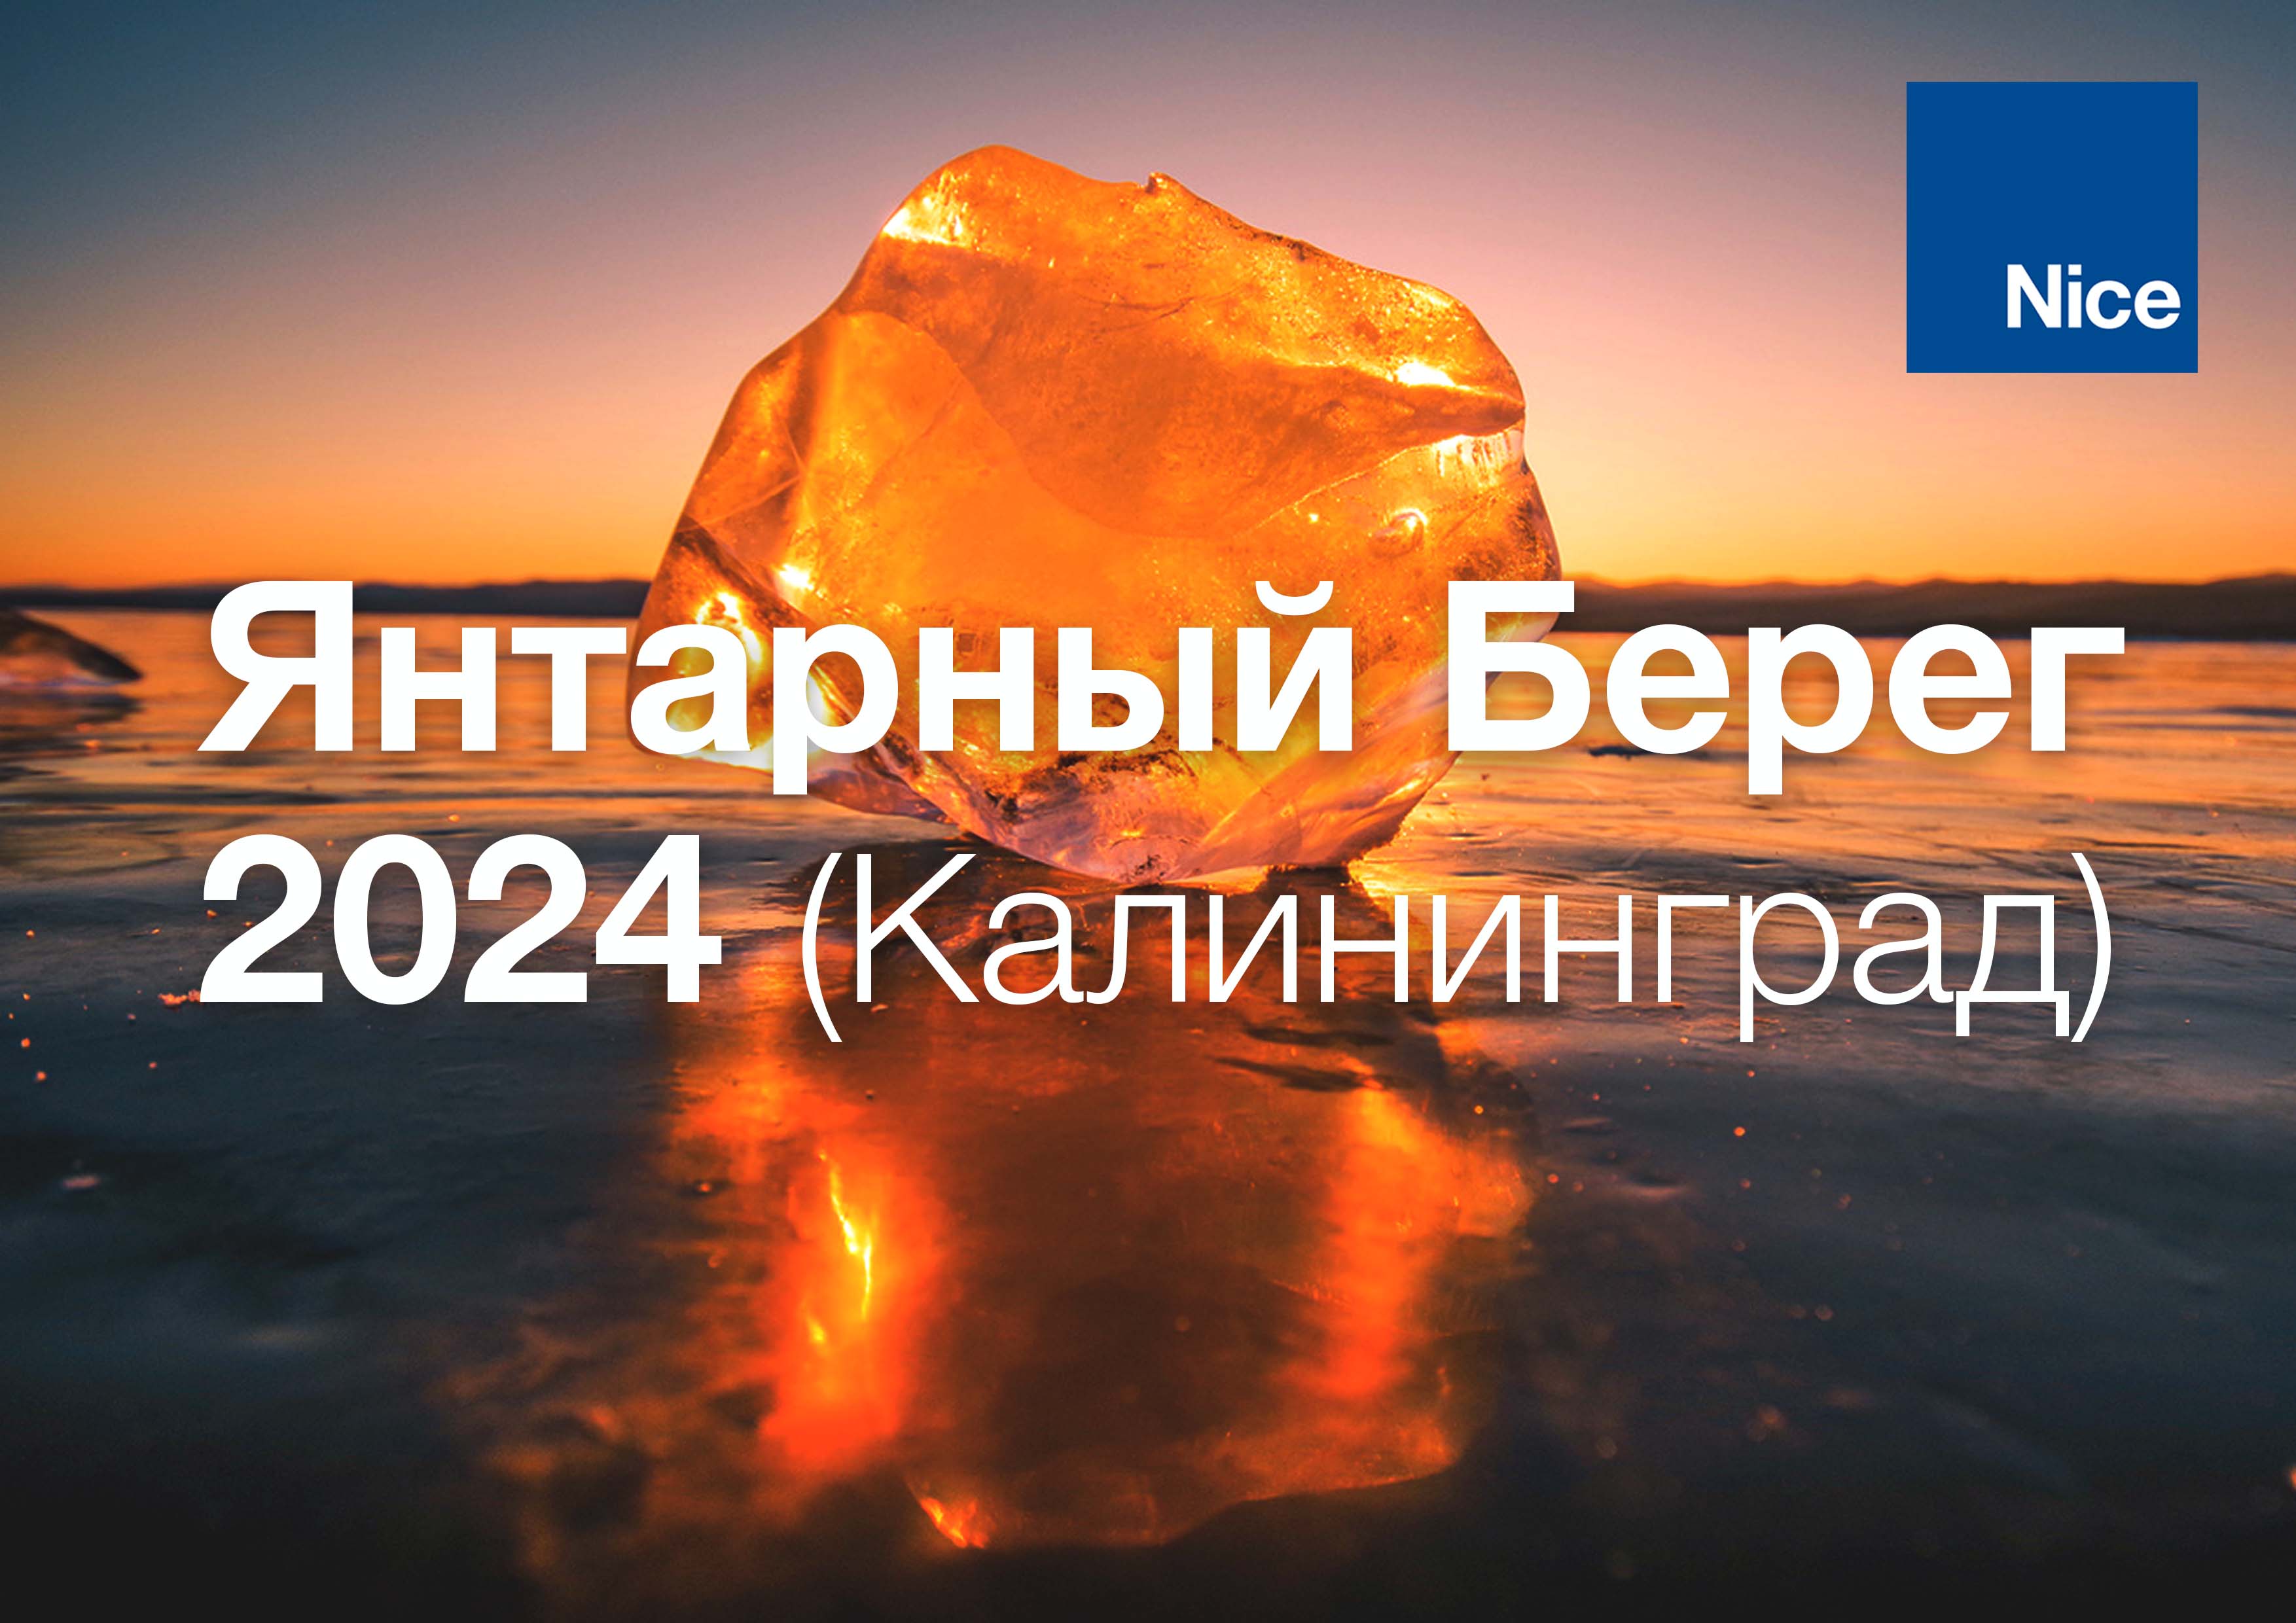 Янтарный Берег Nice 2024 (встреча партнеров Nice в городе Калининград)